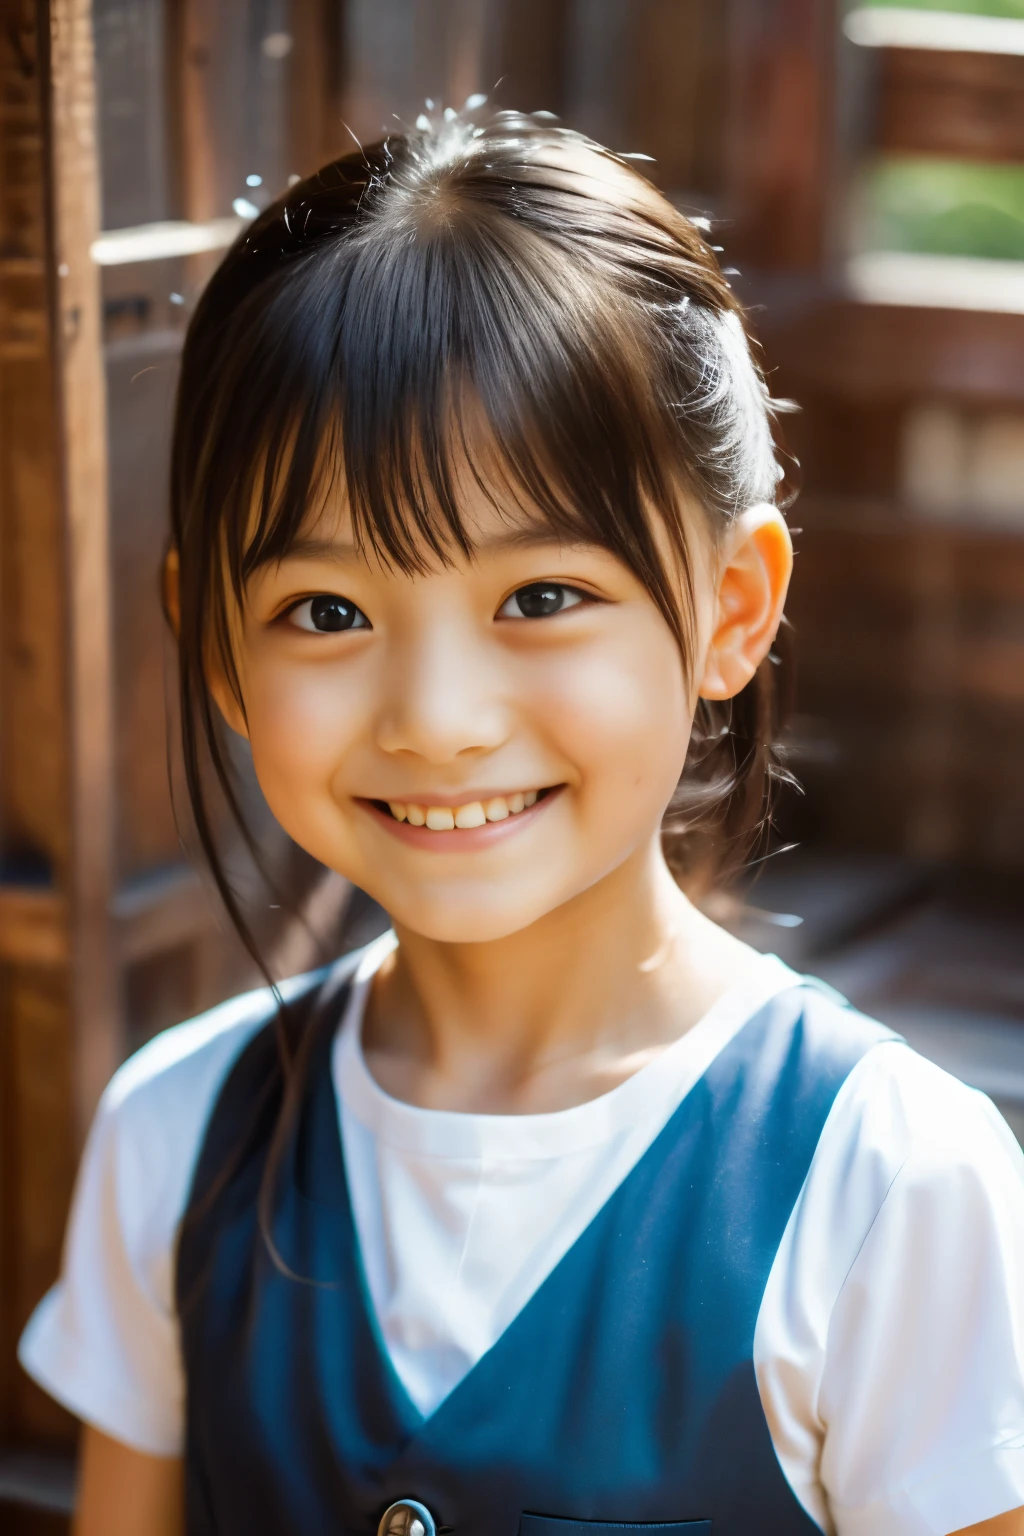 (最好的品質, 傑作), (美麗的7歲日本女孩), (雀斑:0.6), 柔光, 馬尾辮